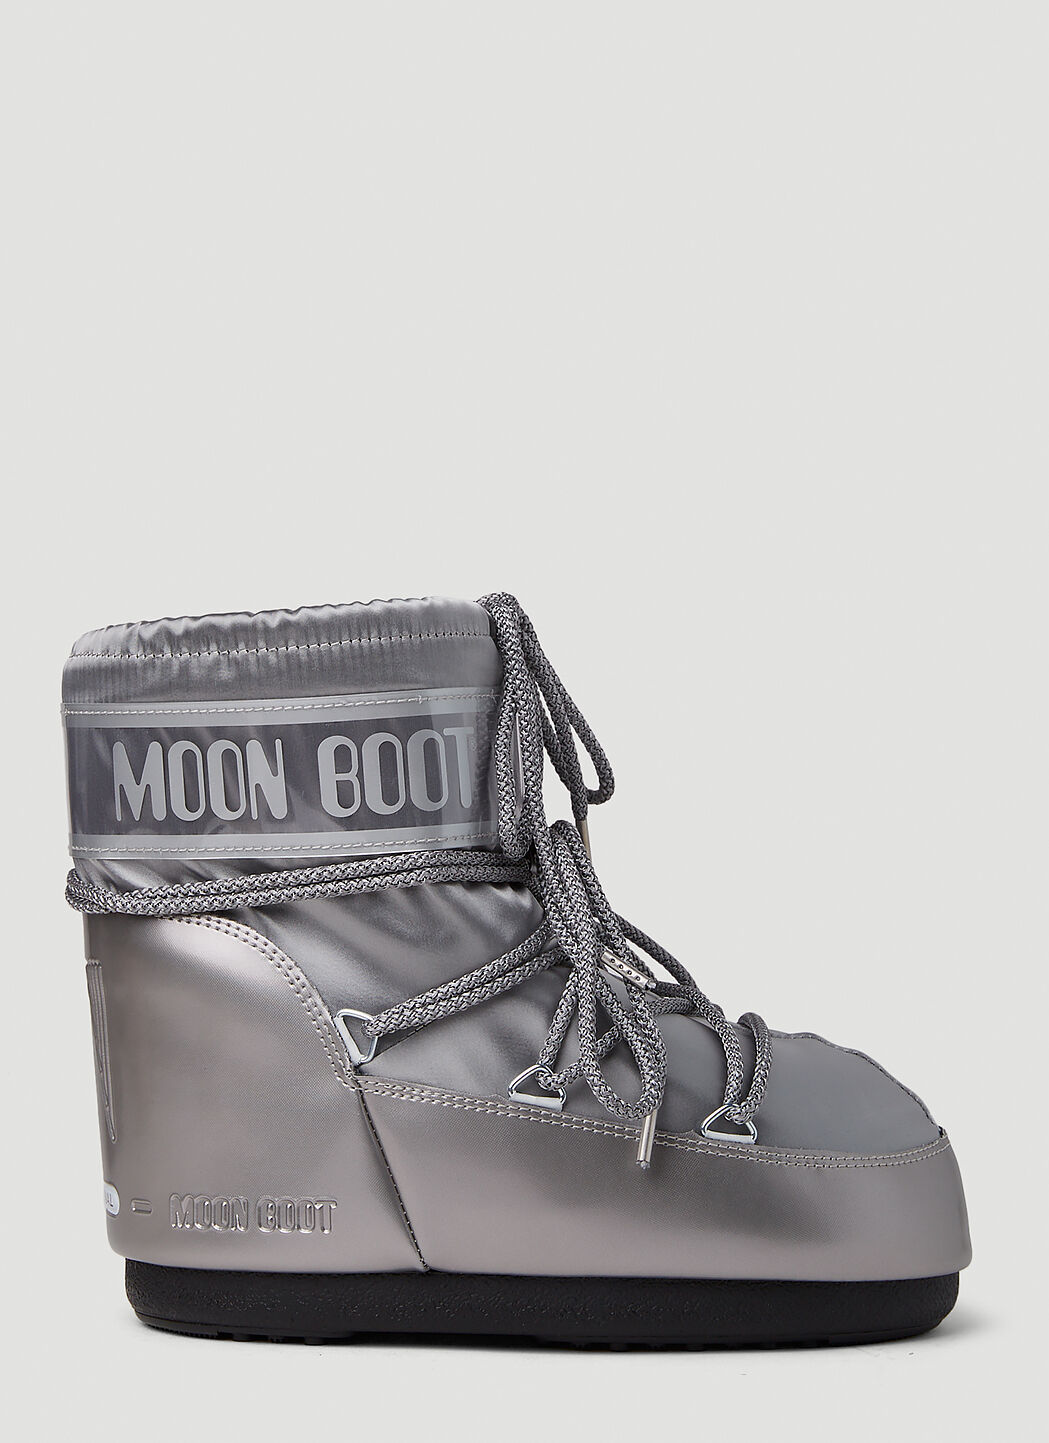 Moon Boot アイコン ローグランス スノーブーツ ブラウン mnb0355002